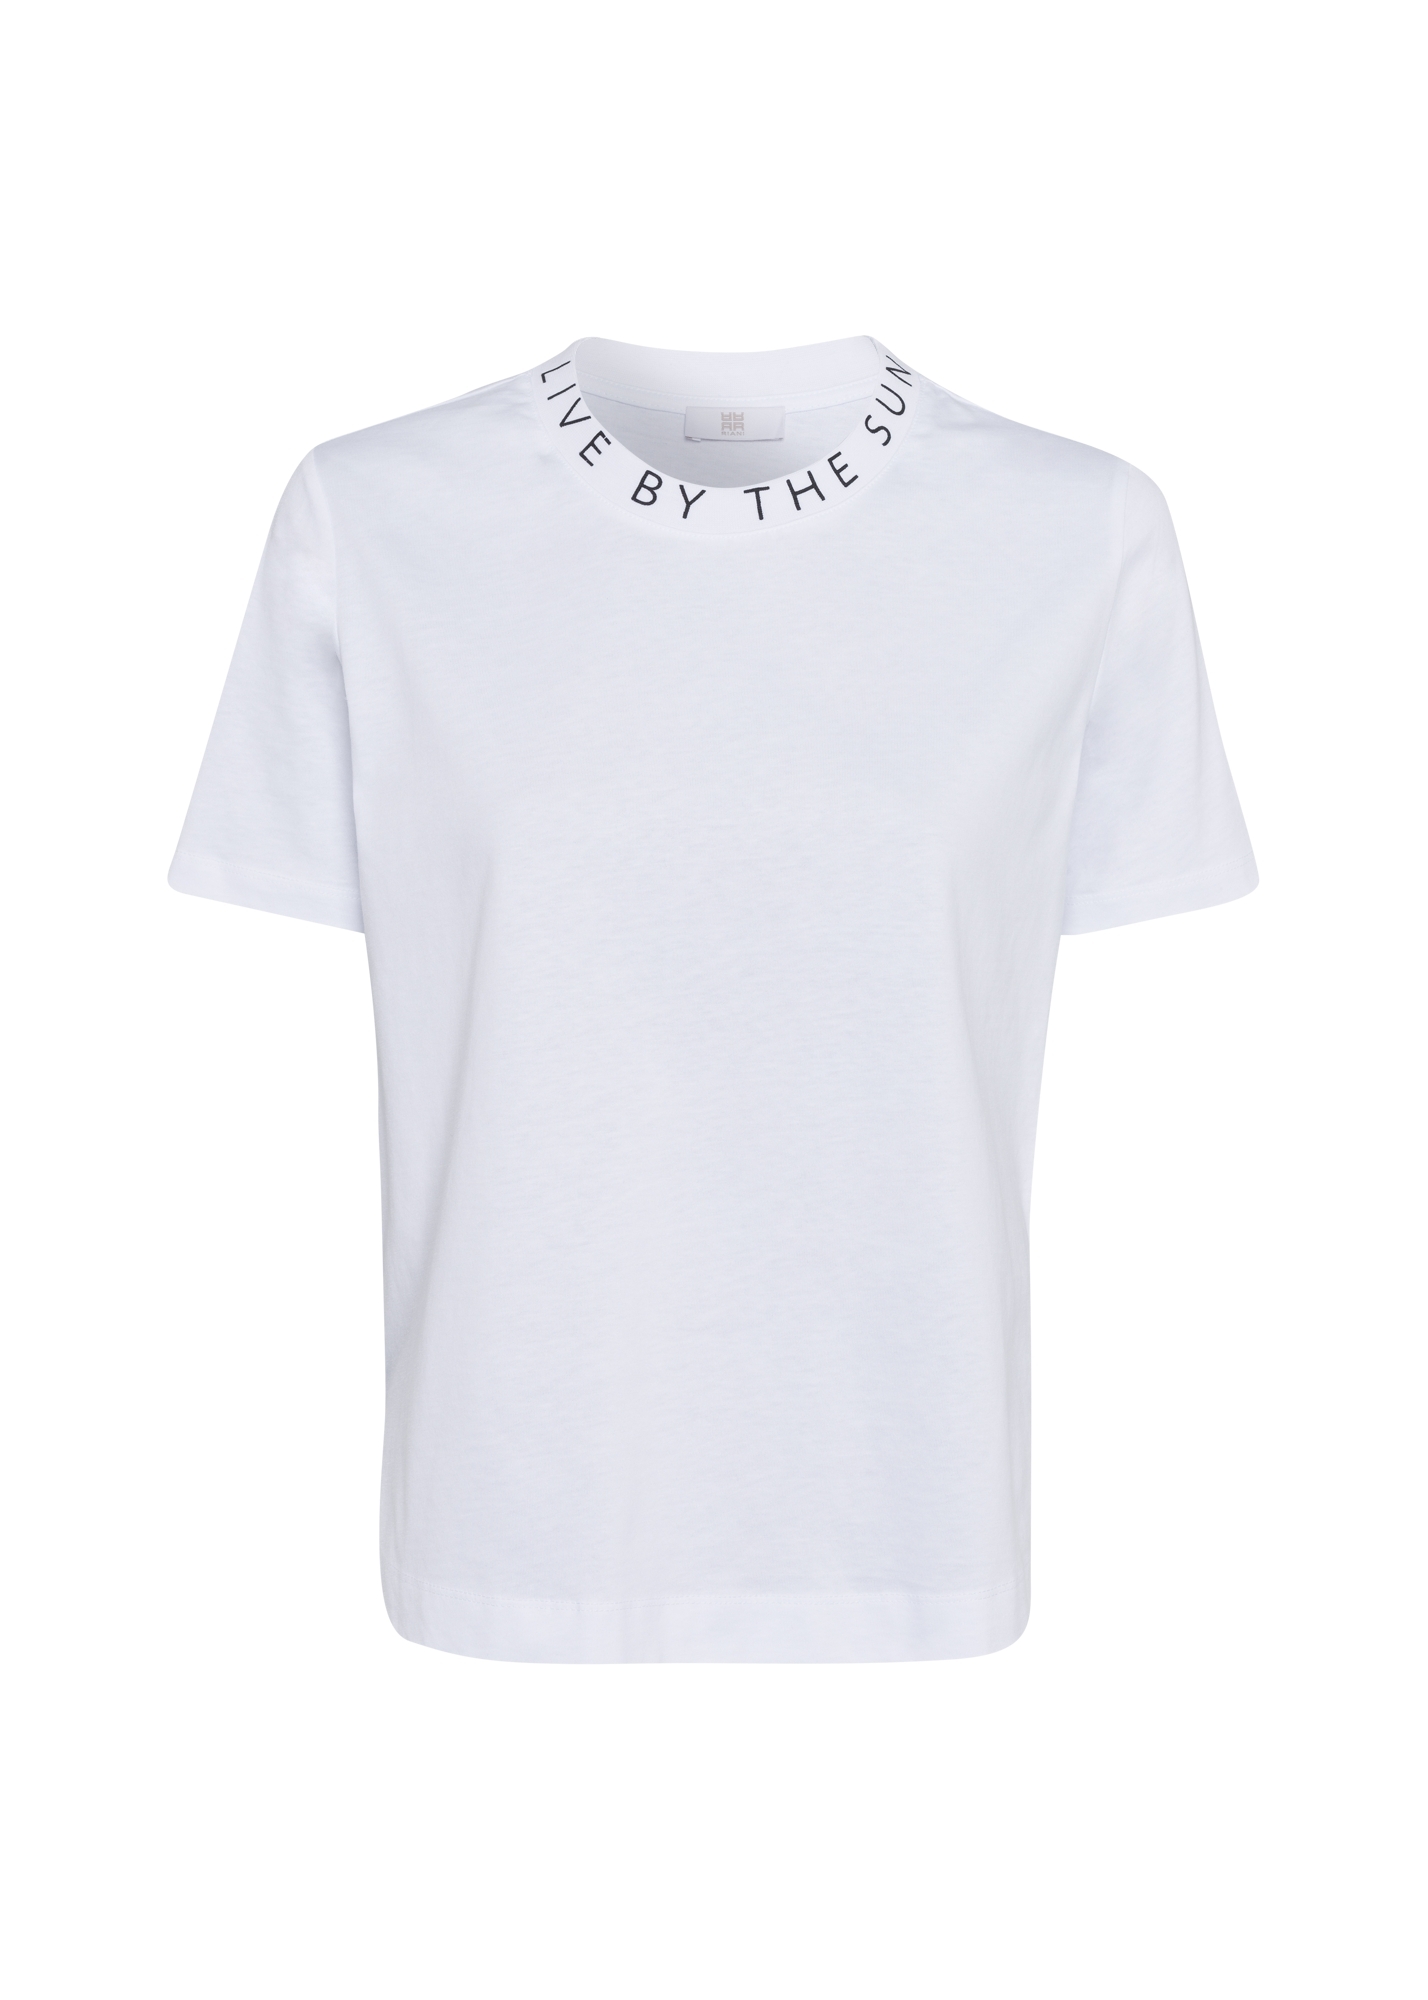 T-shirt krótki rękaw, kolor biały z czarnym napisem przy szyi Riani 138285-7909-100